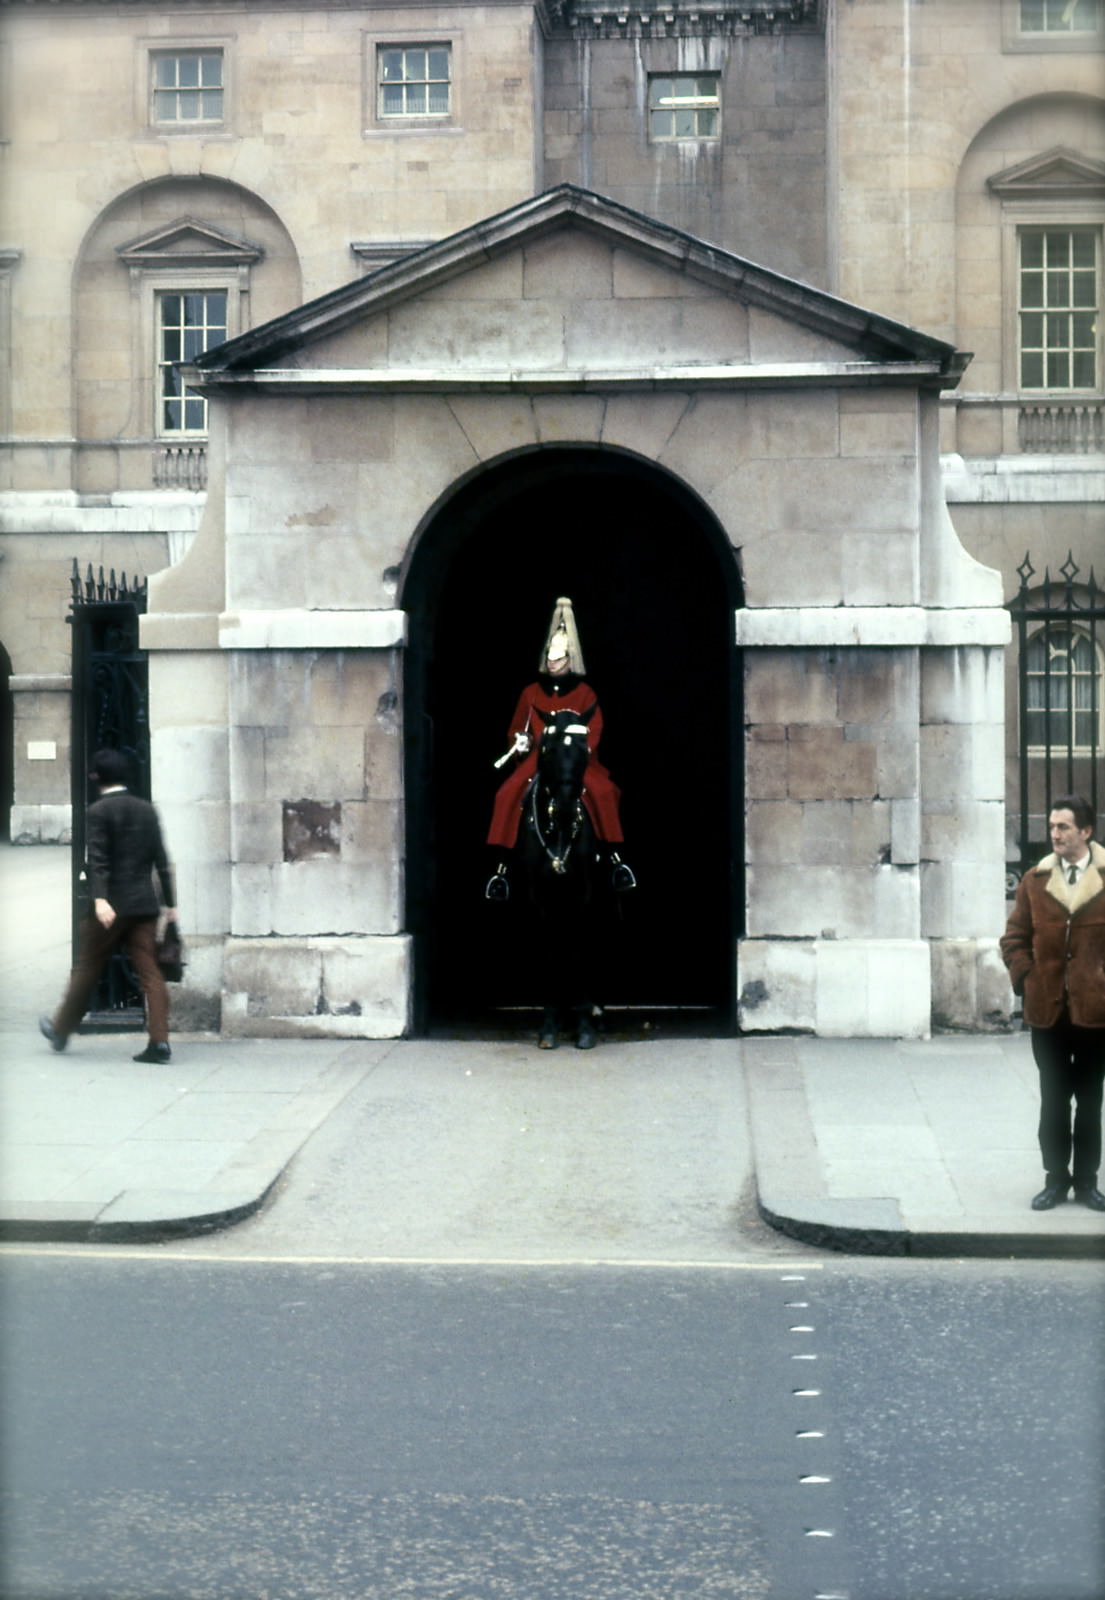 London, 1971